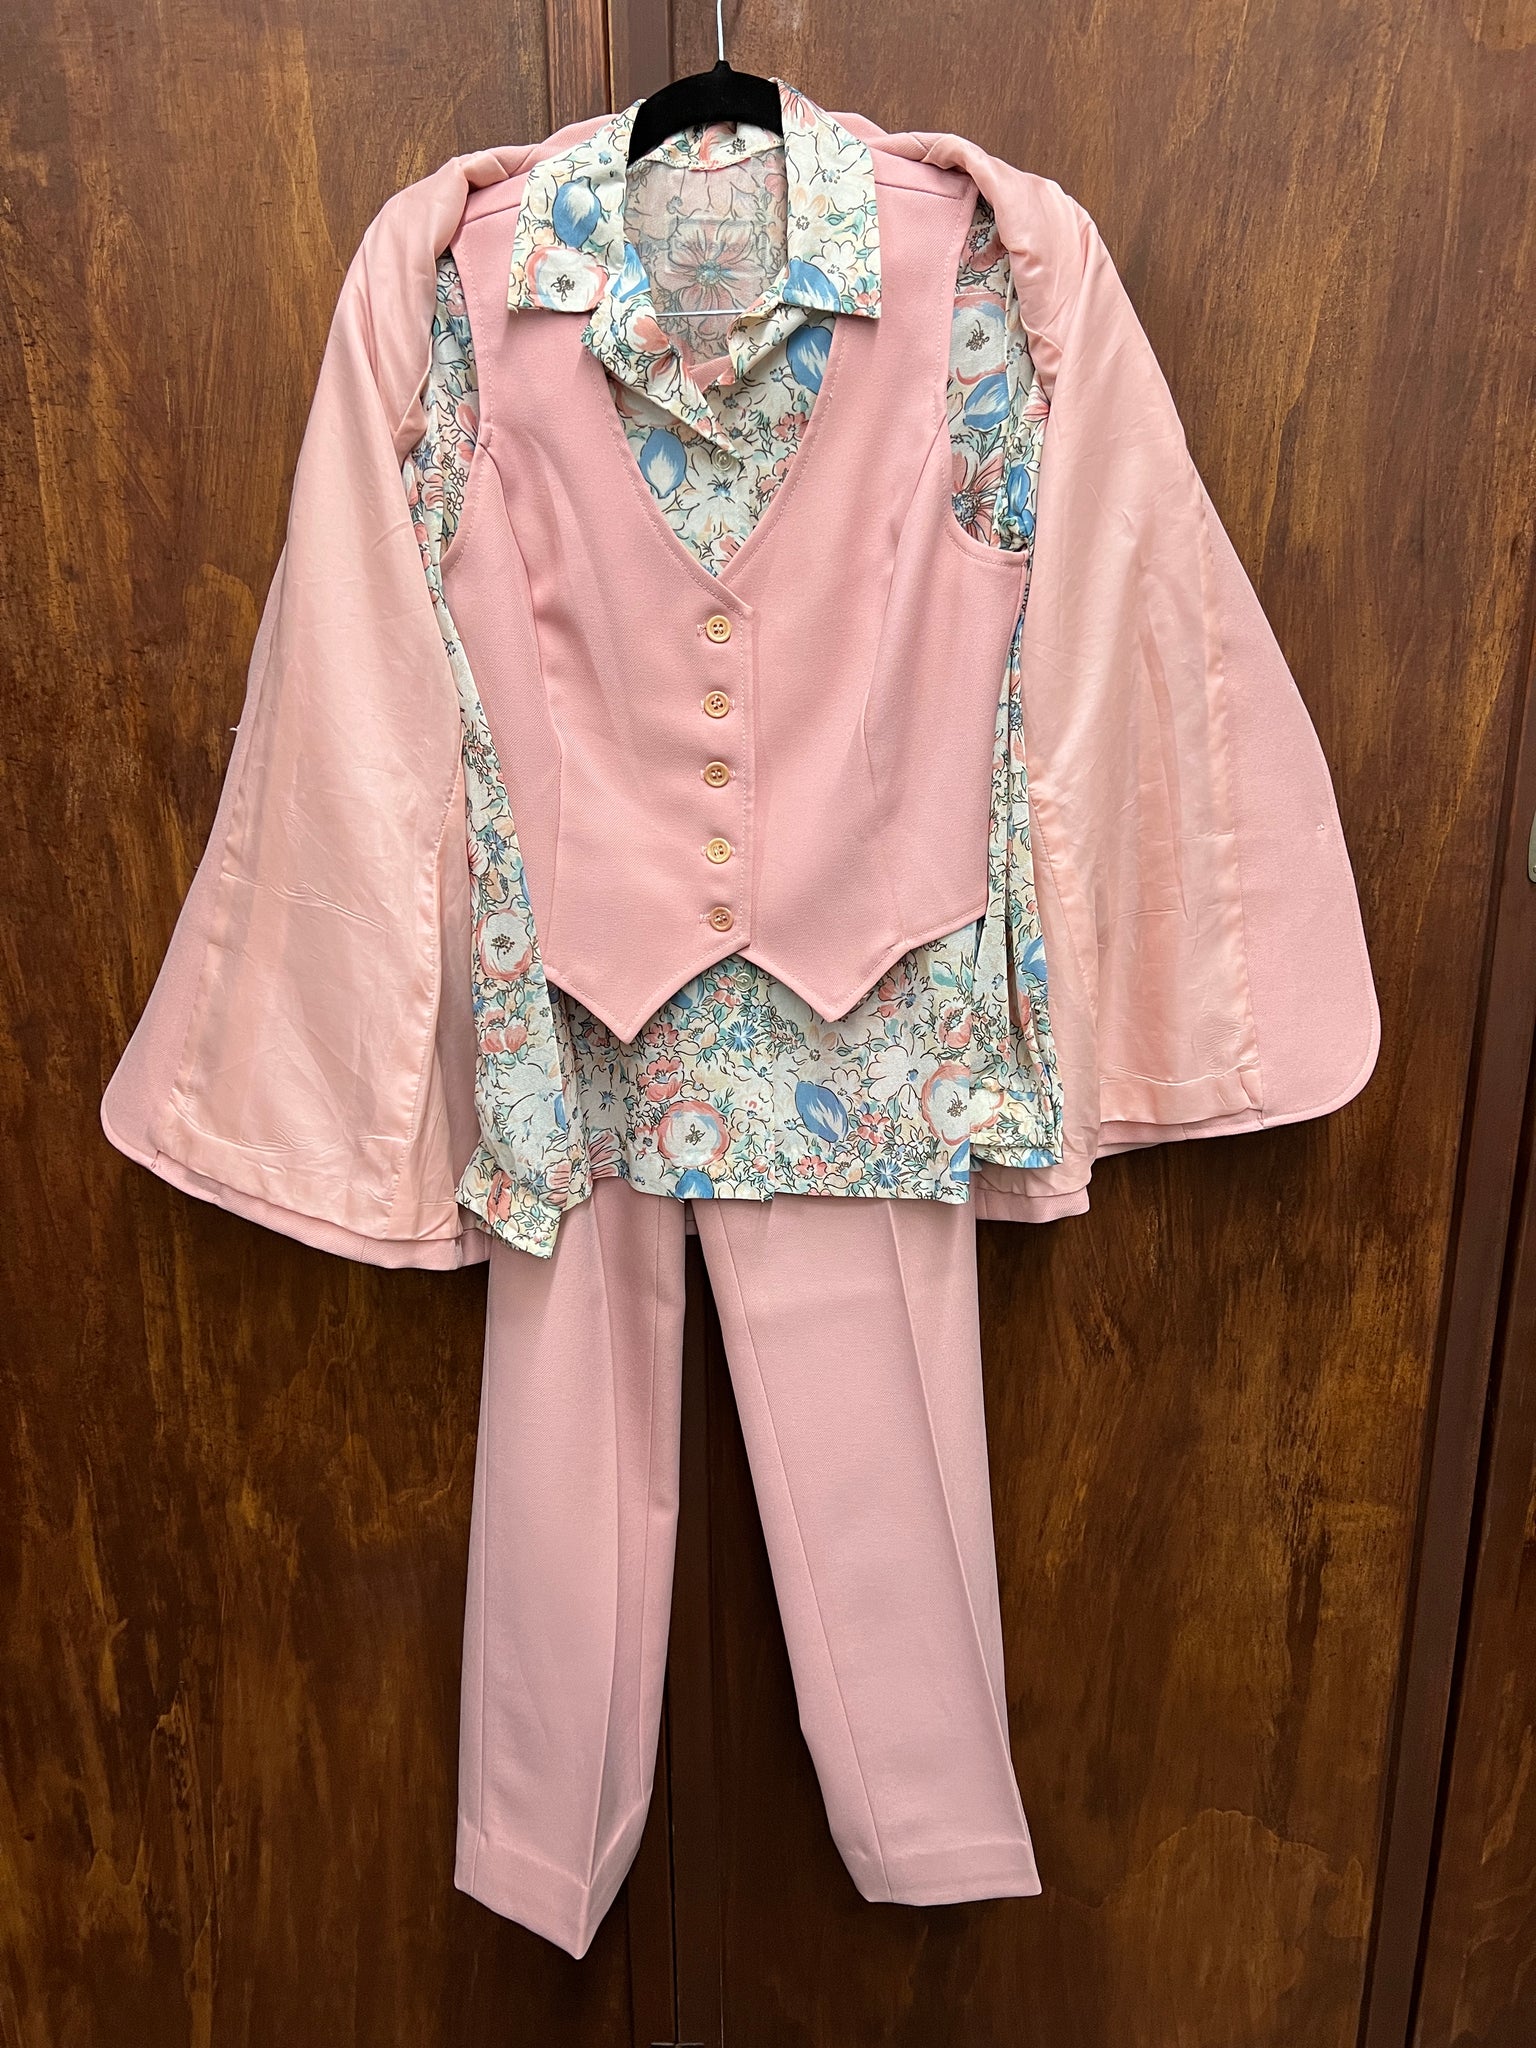 1970s 2PIECE- 4 PIECE PANTSUIT- Pink vest/jacket/ pants w/ printed top